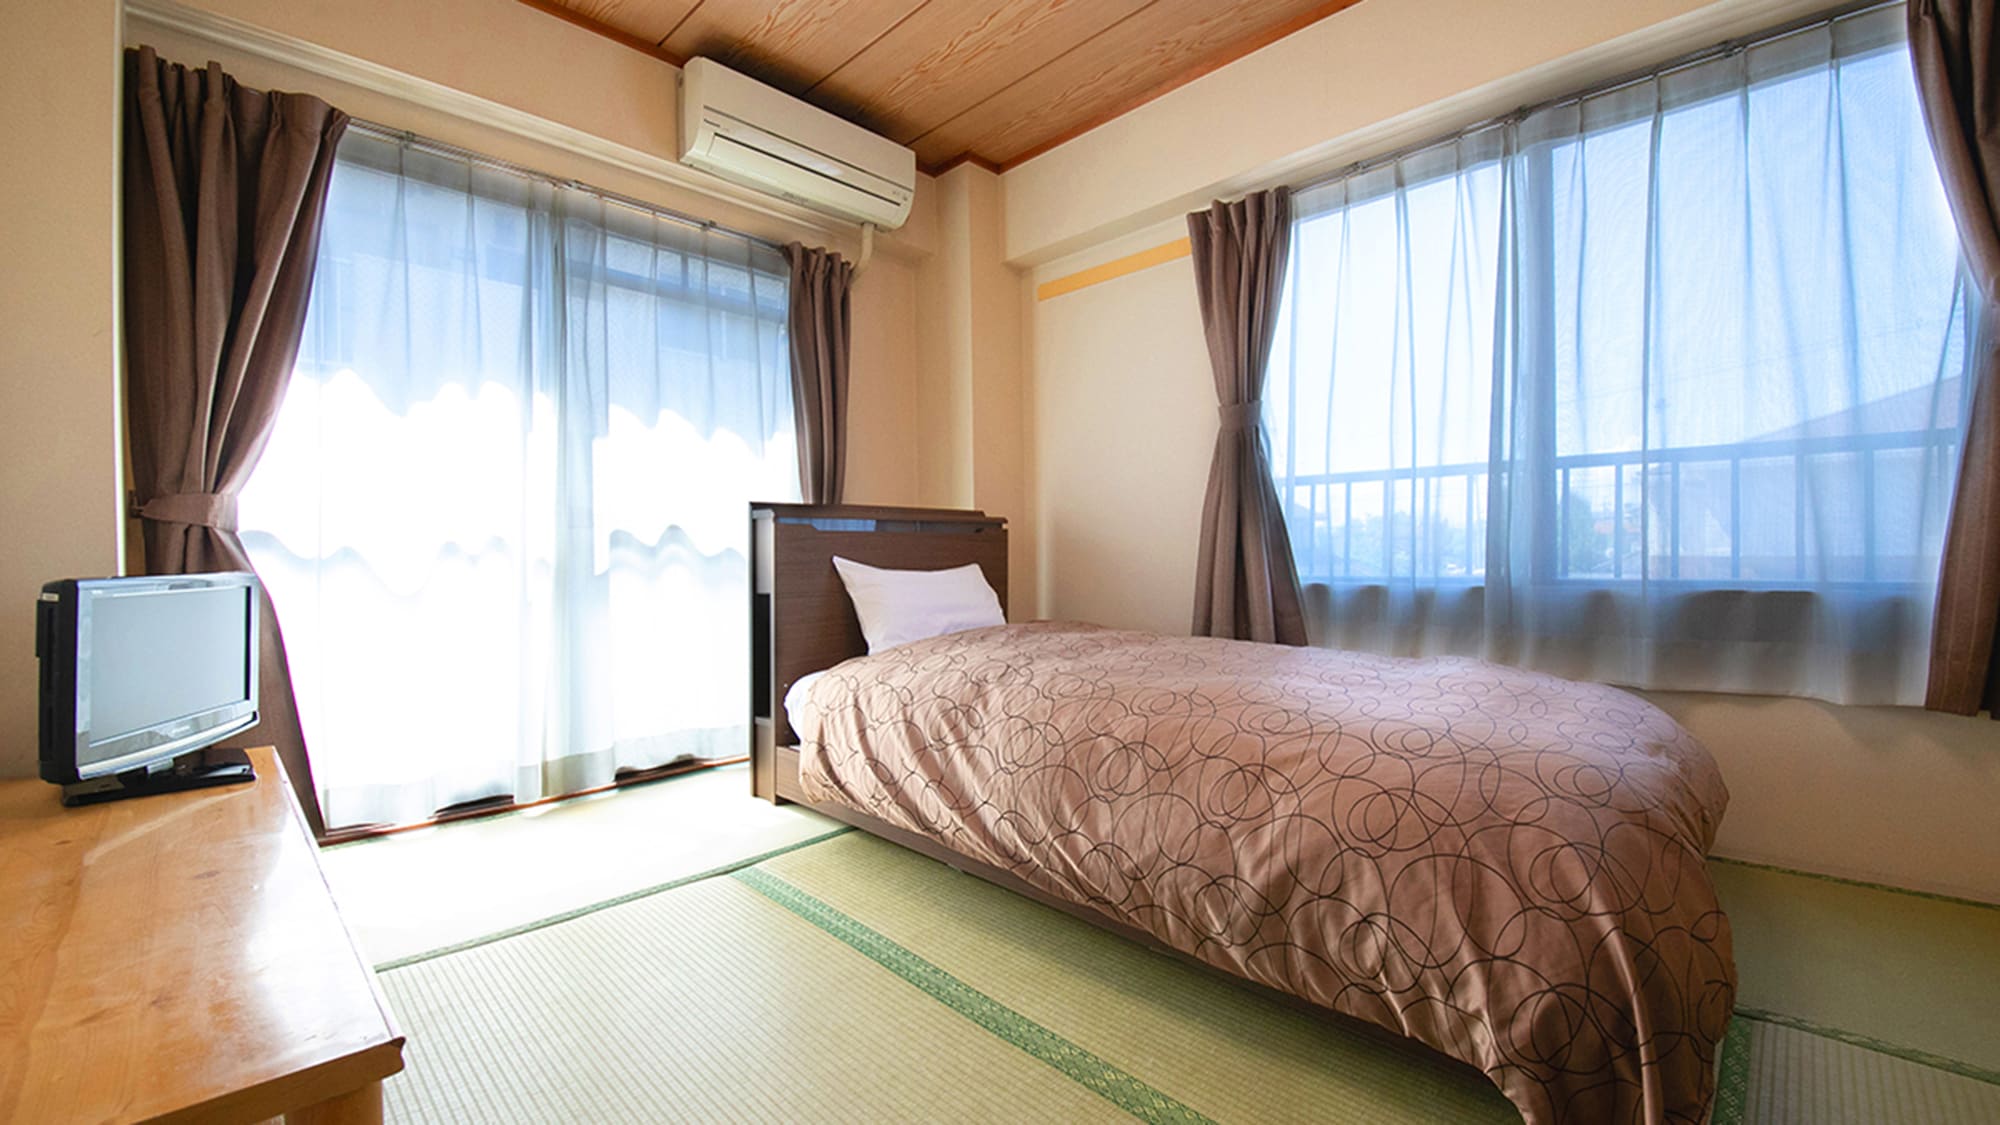 ■ แอนเน็กซ์ ห้องพักสไตล์ญี่ปุ่นพร้อมเตียงเสื่อทาทามิ 6 เตียง ■ ห้องอาบน้ำและห้องส้วมมีในห้องด้วย